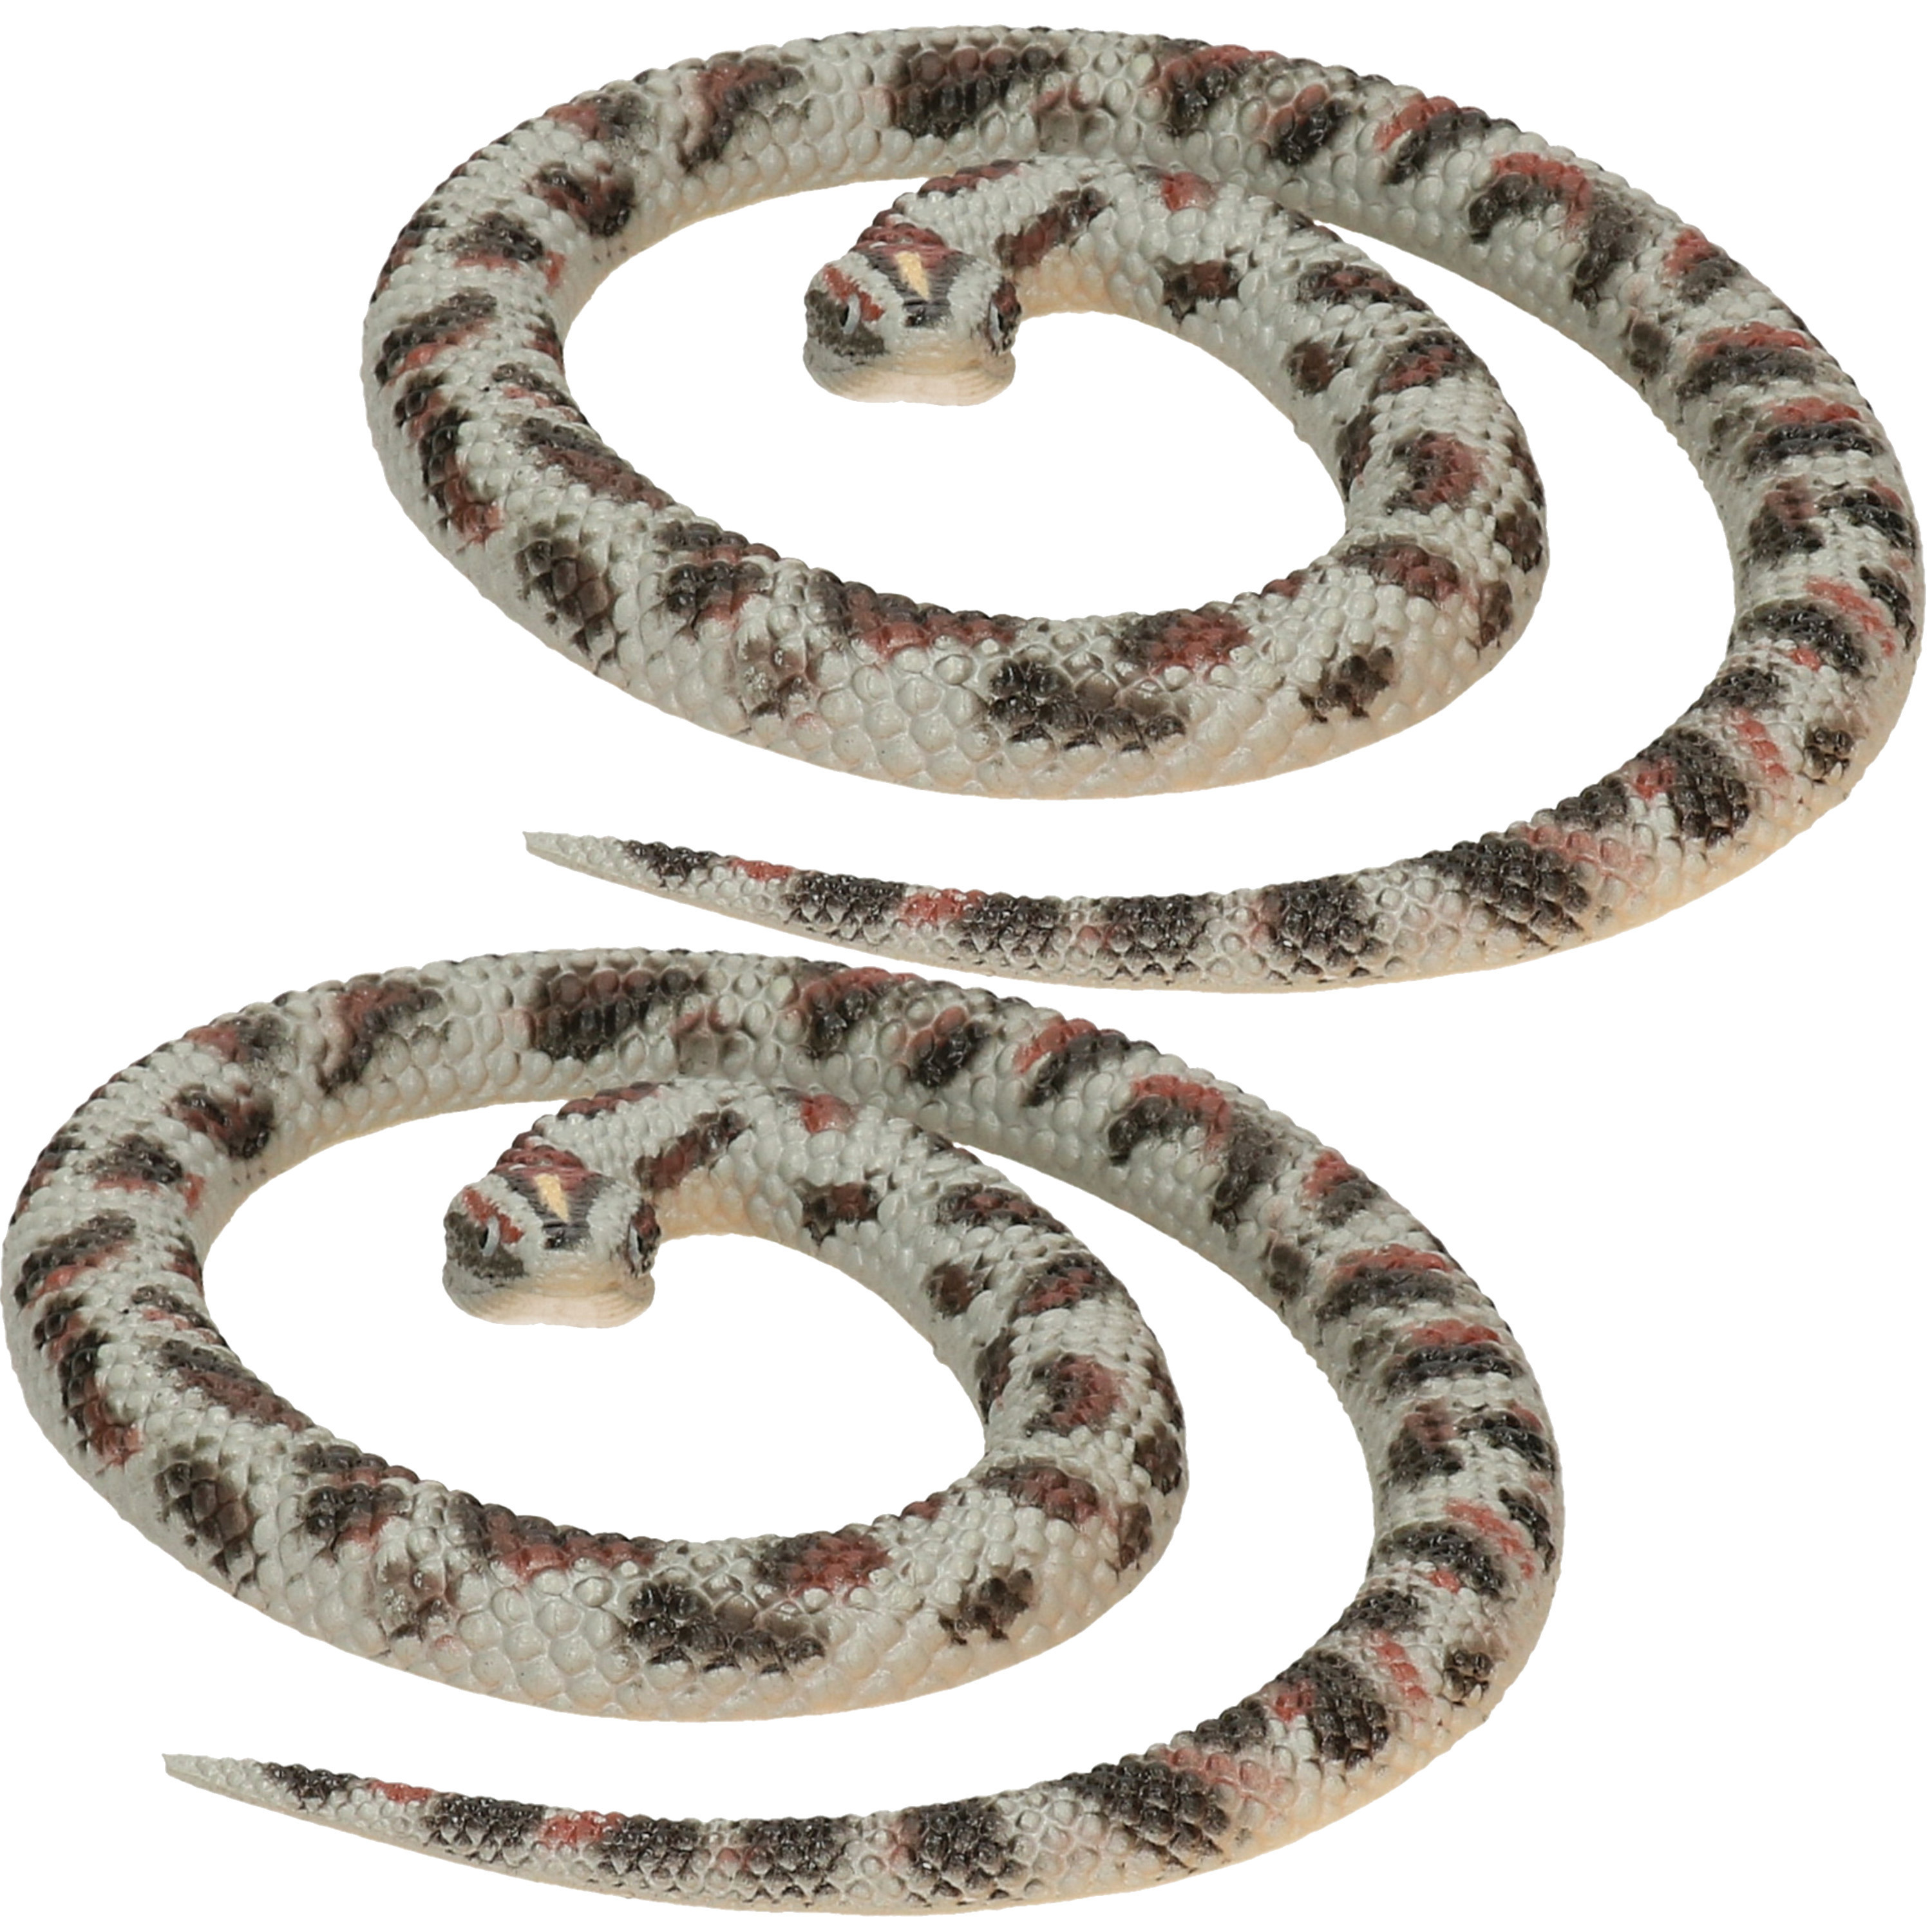 Setje van 2x rubberen nep-namaak slangen van 65 cm